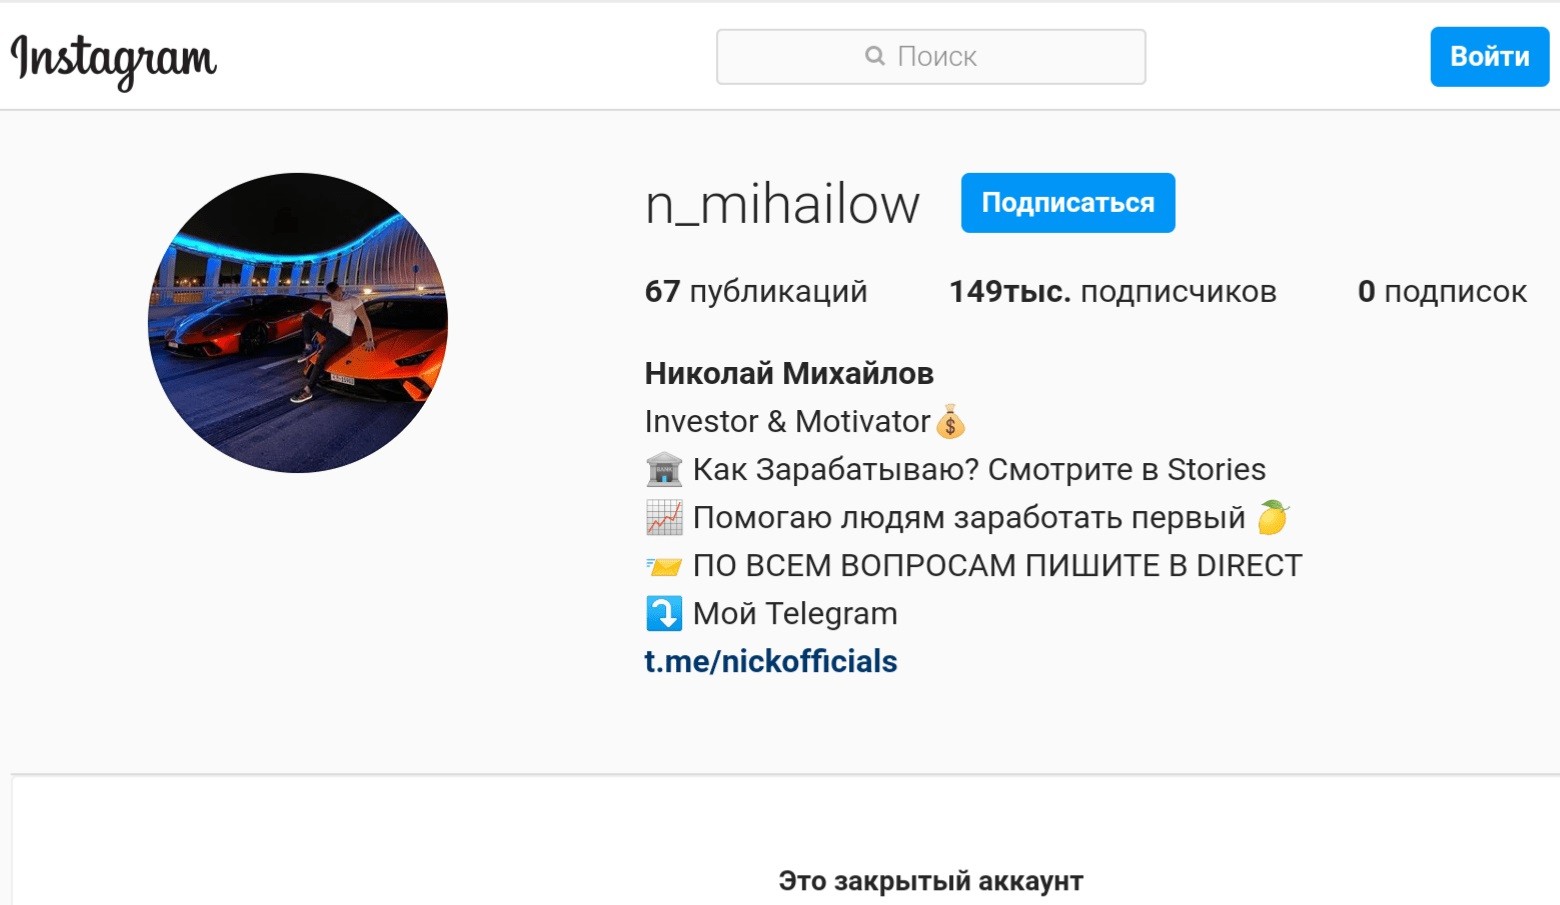 Аккаунт в Инстаграм Николая Михайлова